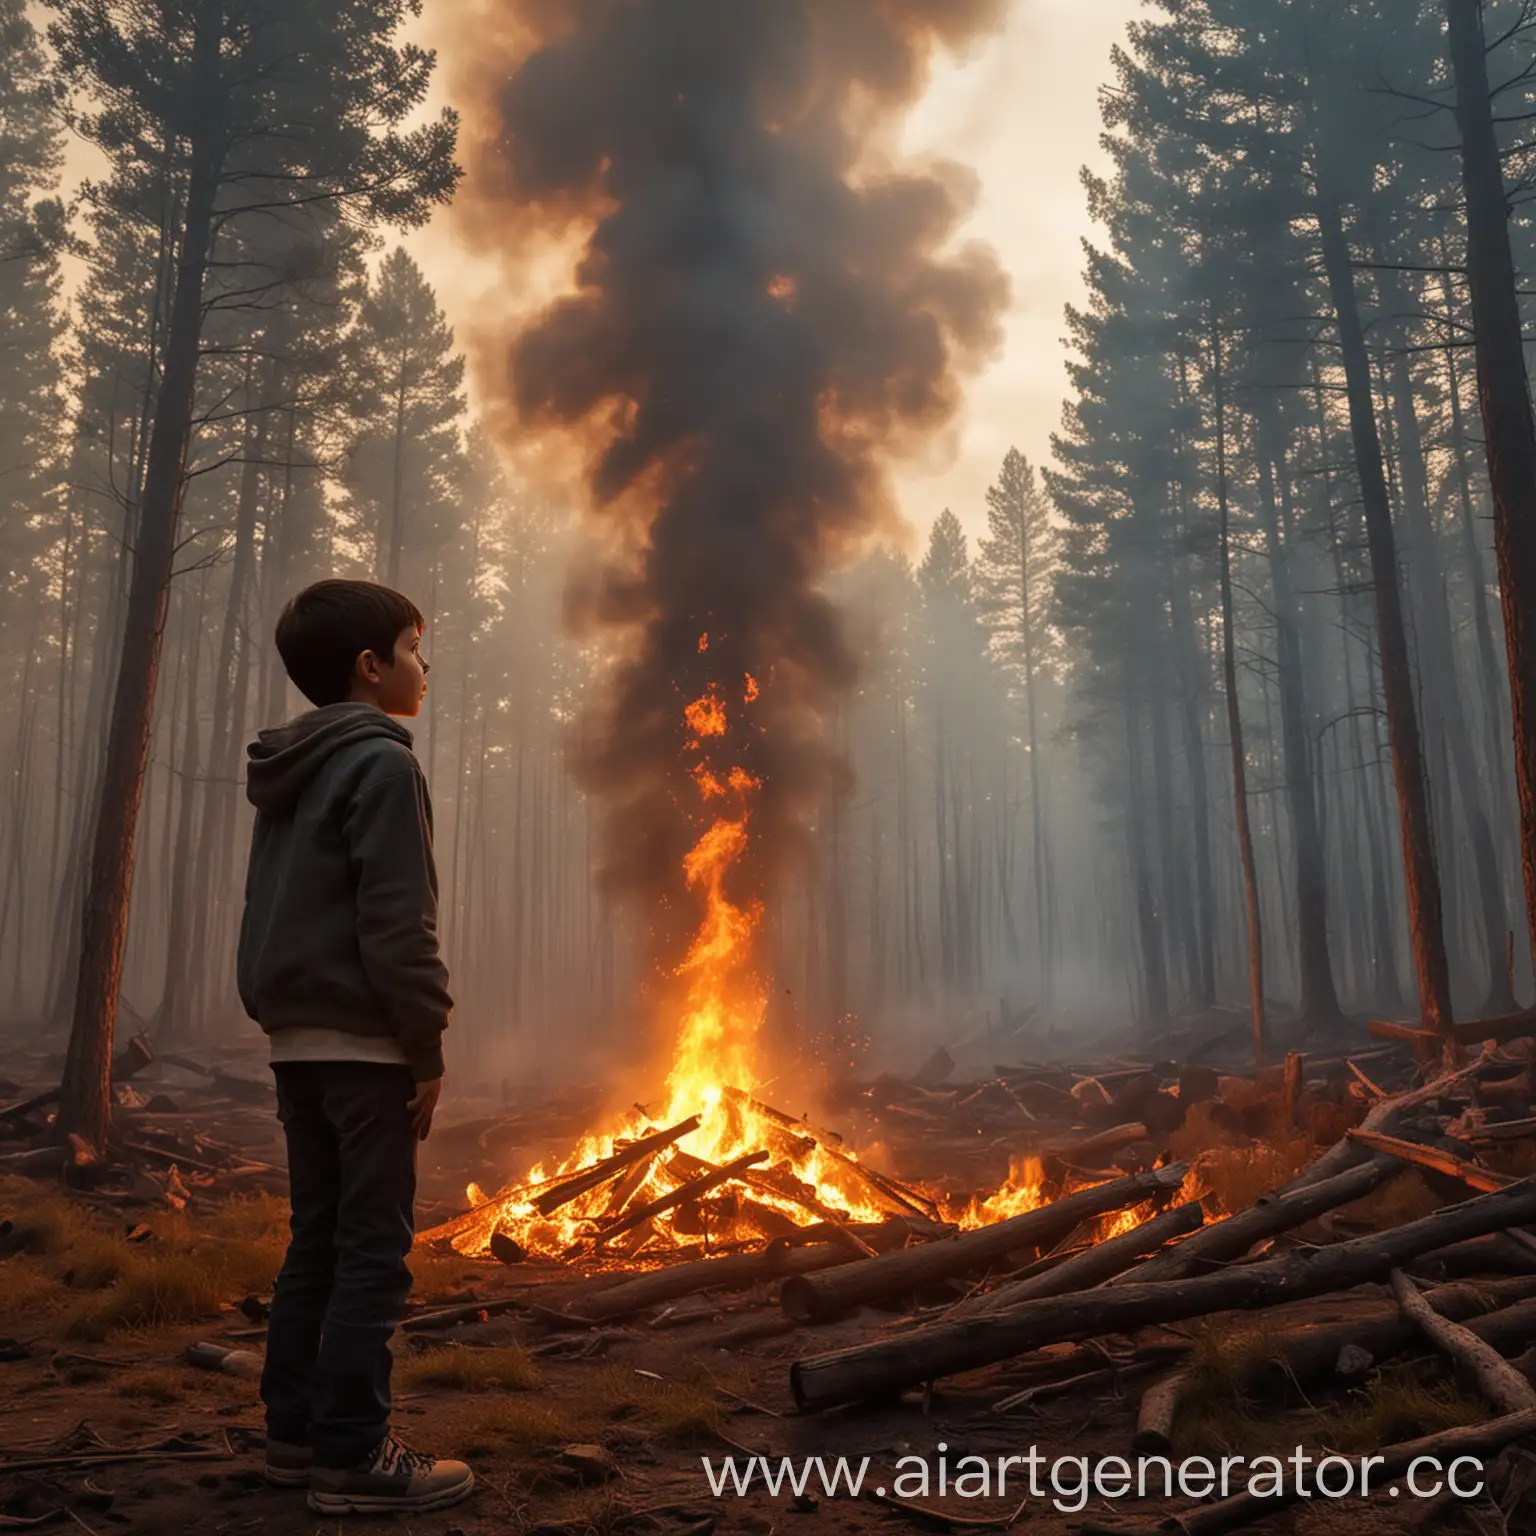 Сгенирируй картинку мальчик стоит смотрит на лес и огонь начал сильно разгораться